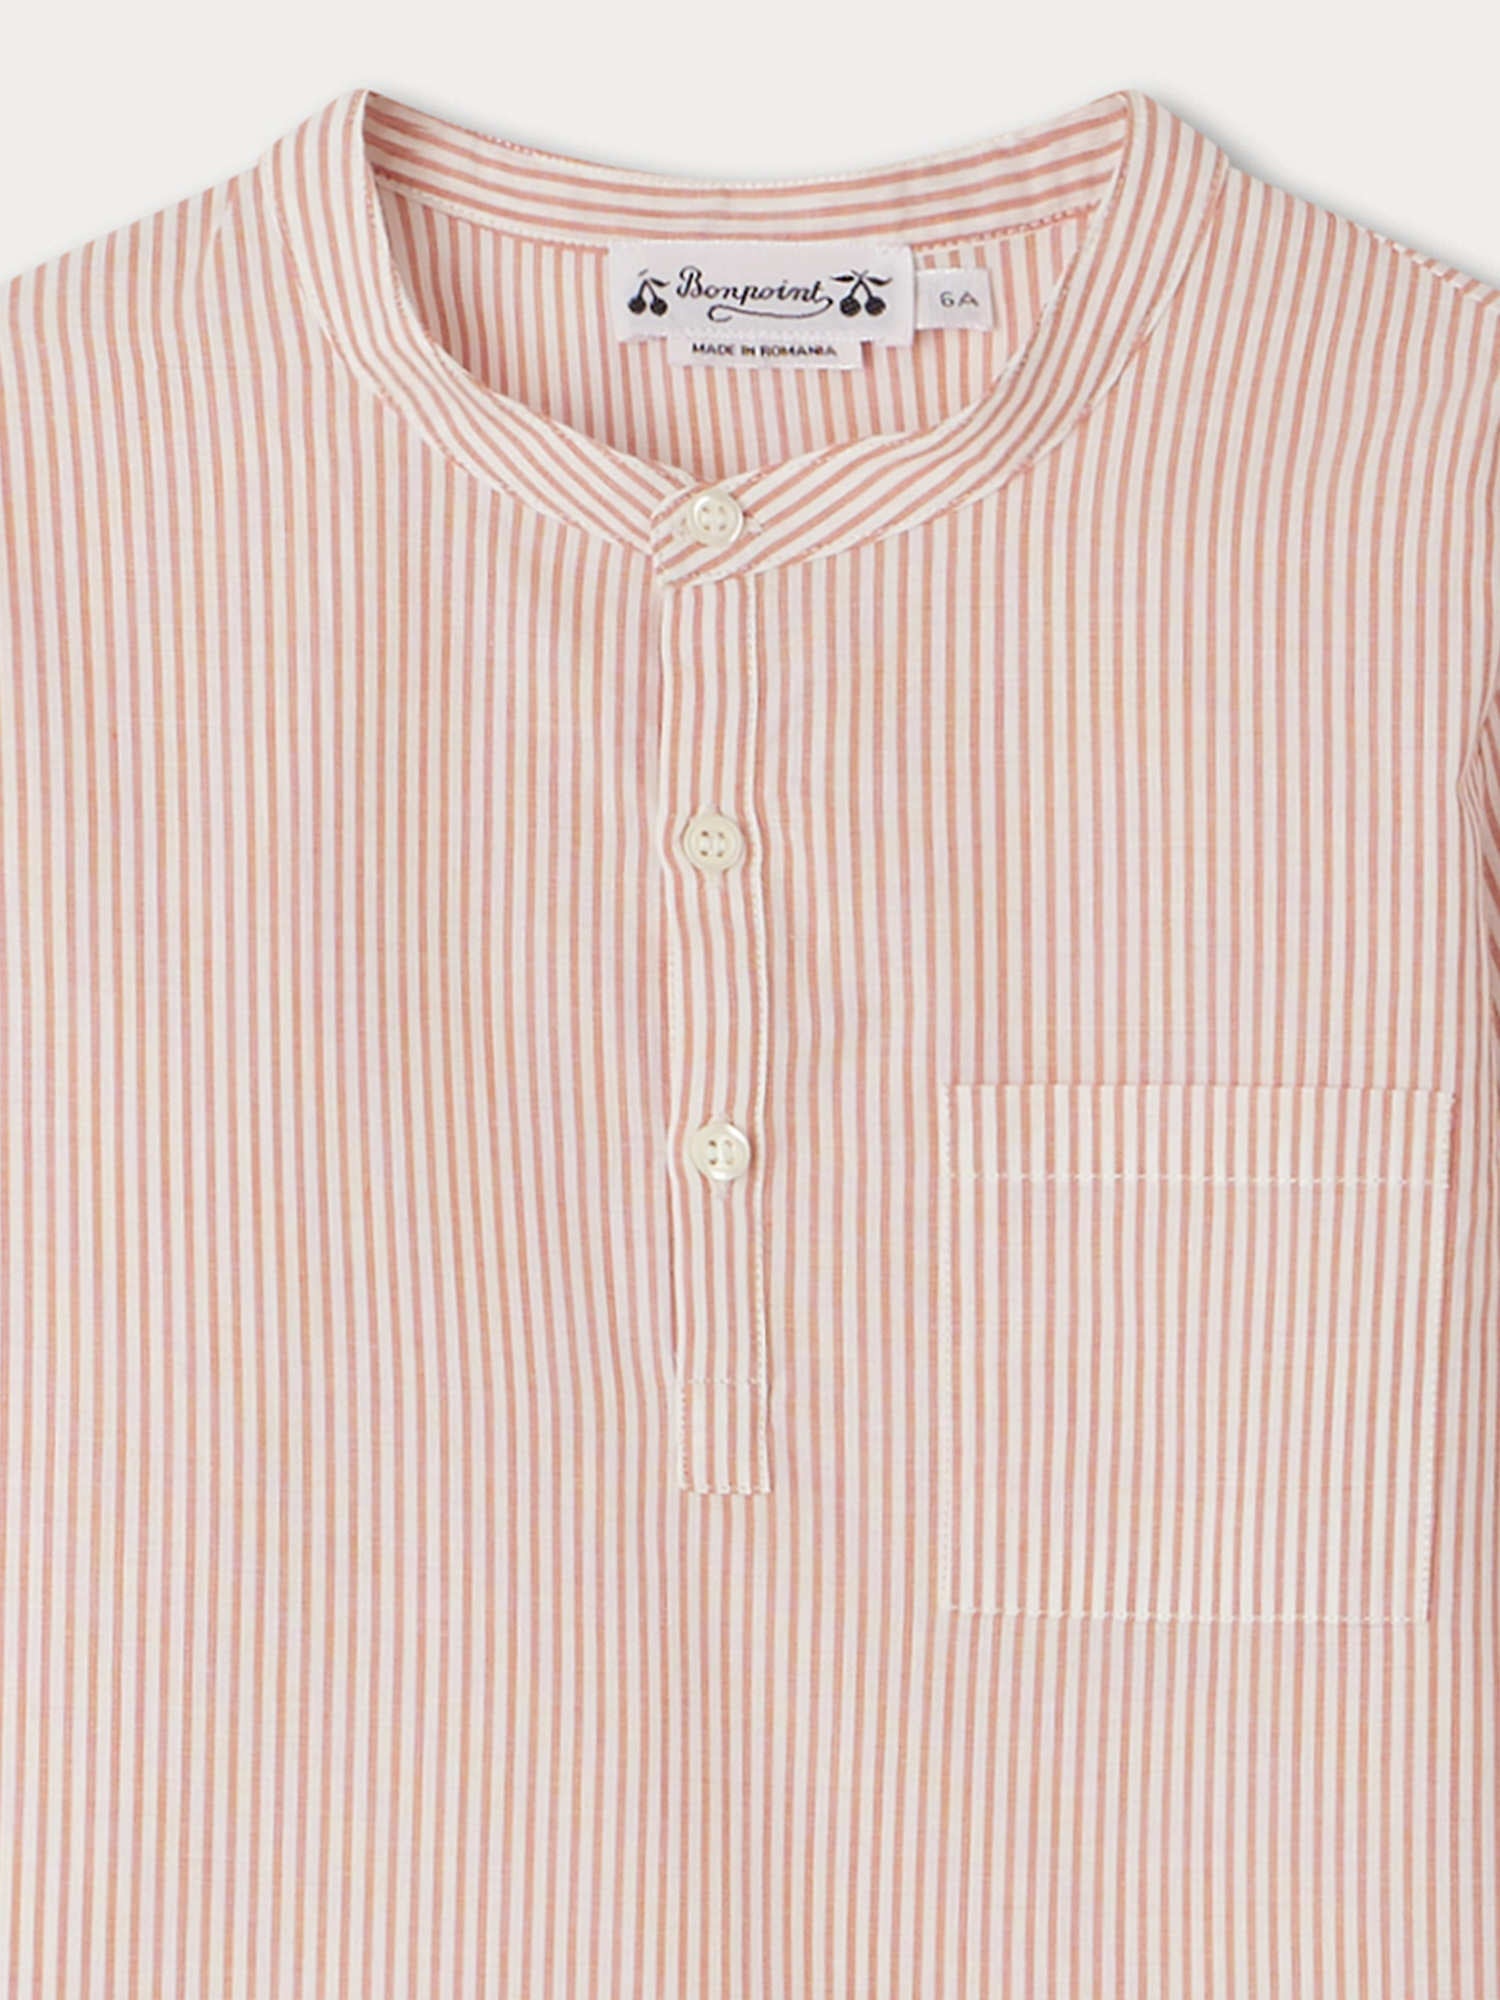 Boys Pink Stripes Cotton Shirt